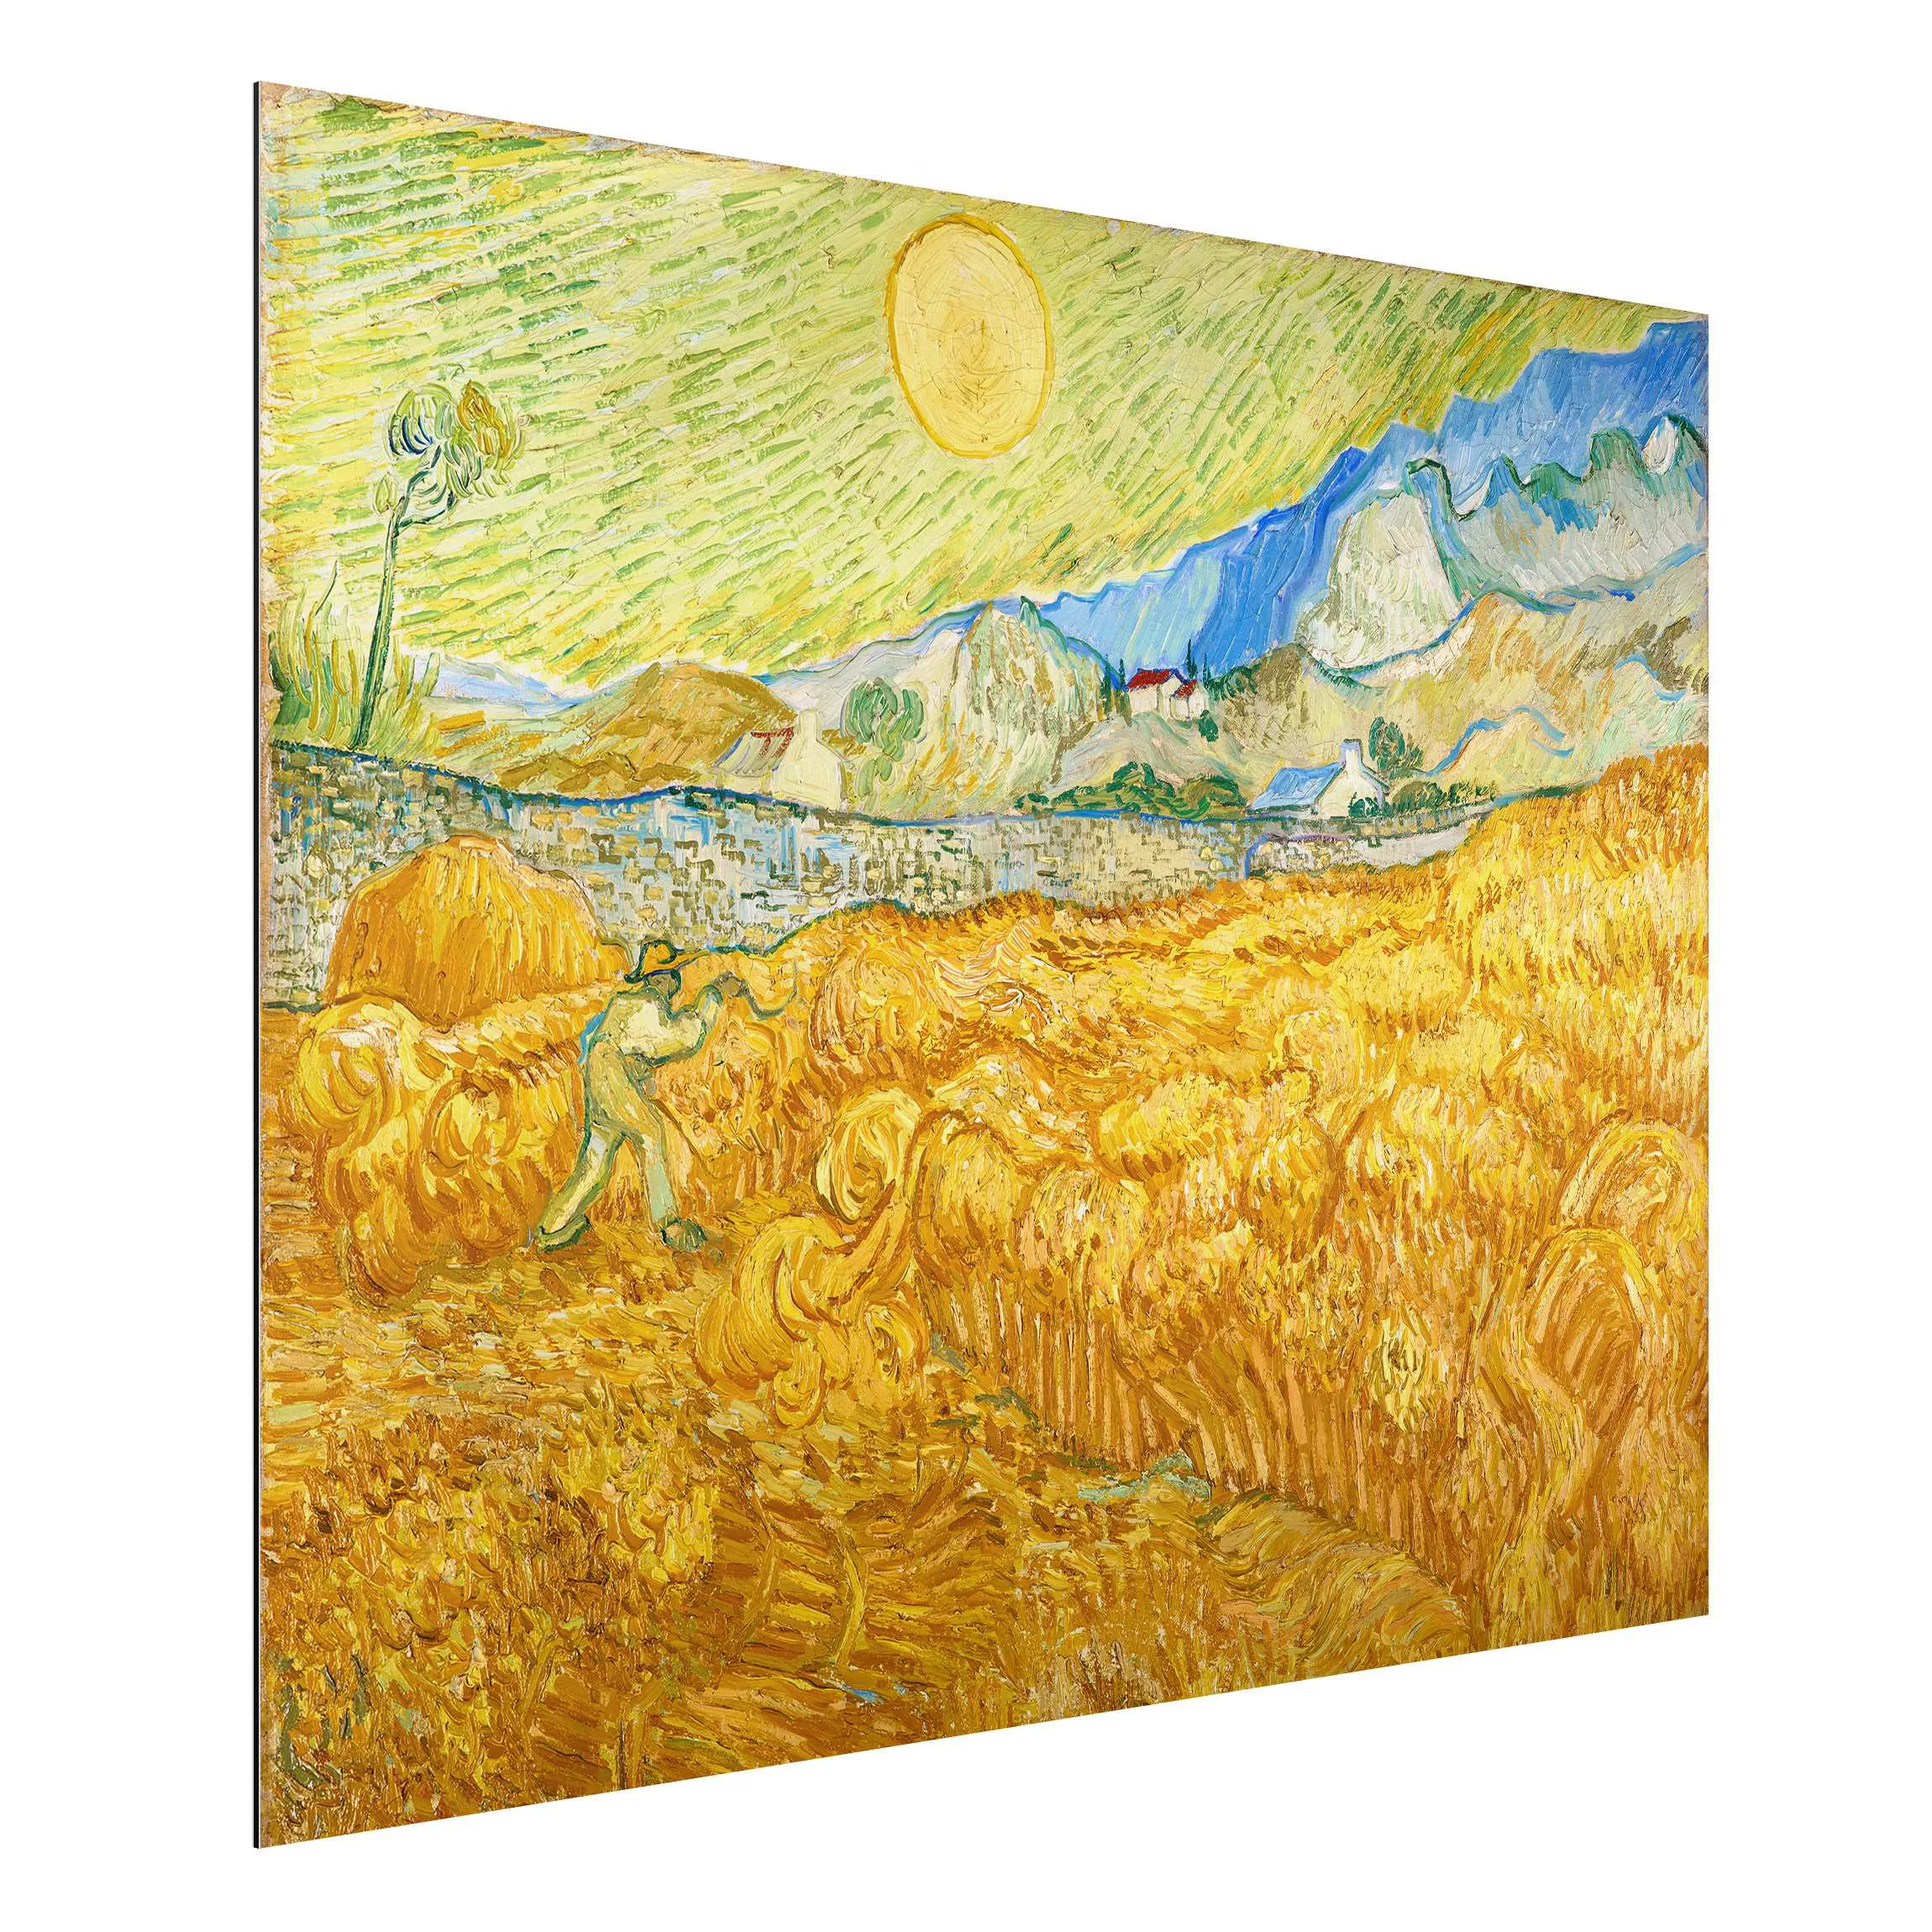 Alu-Dibond Bild Kunstdruck - Querformat 4:3 Vincent van Gogh - Kornfeld mit günstig online kaufen